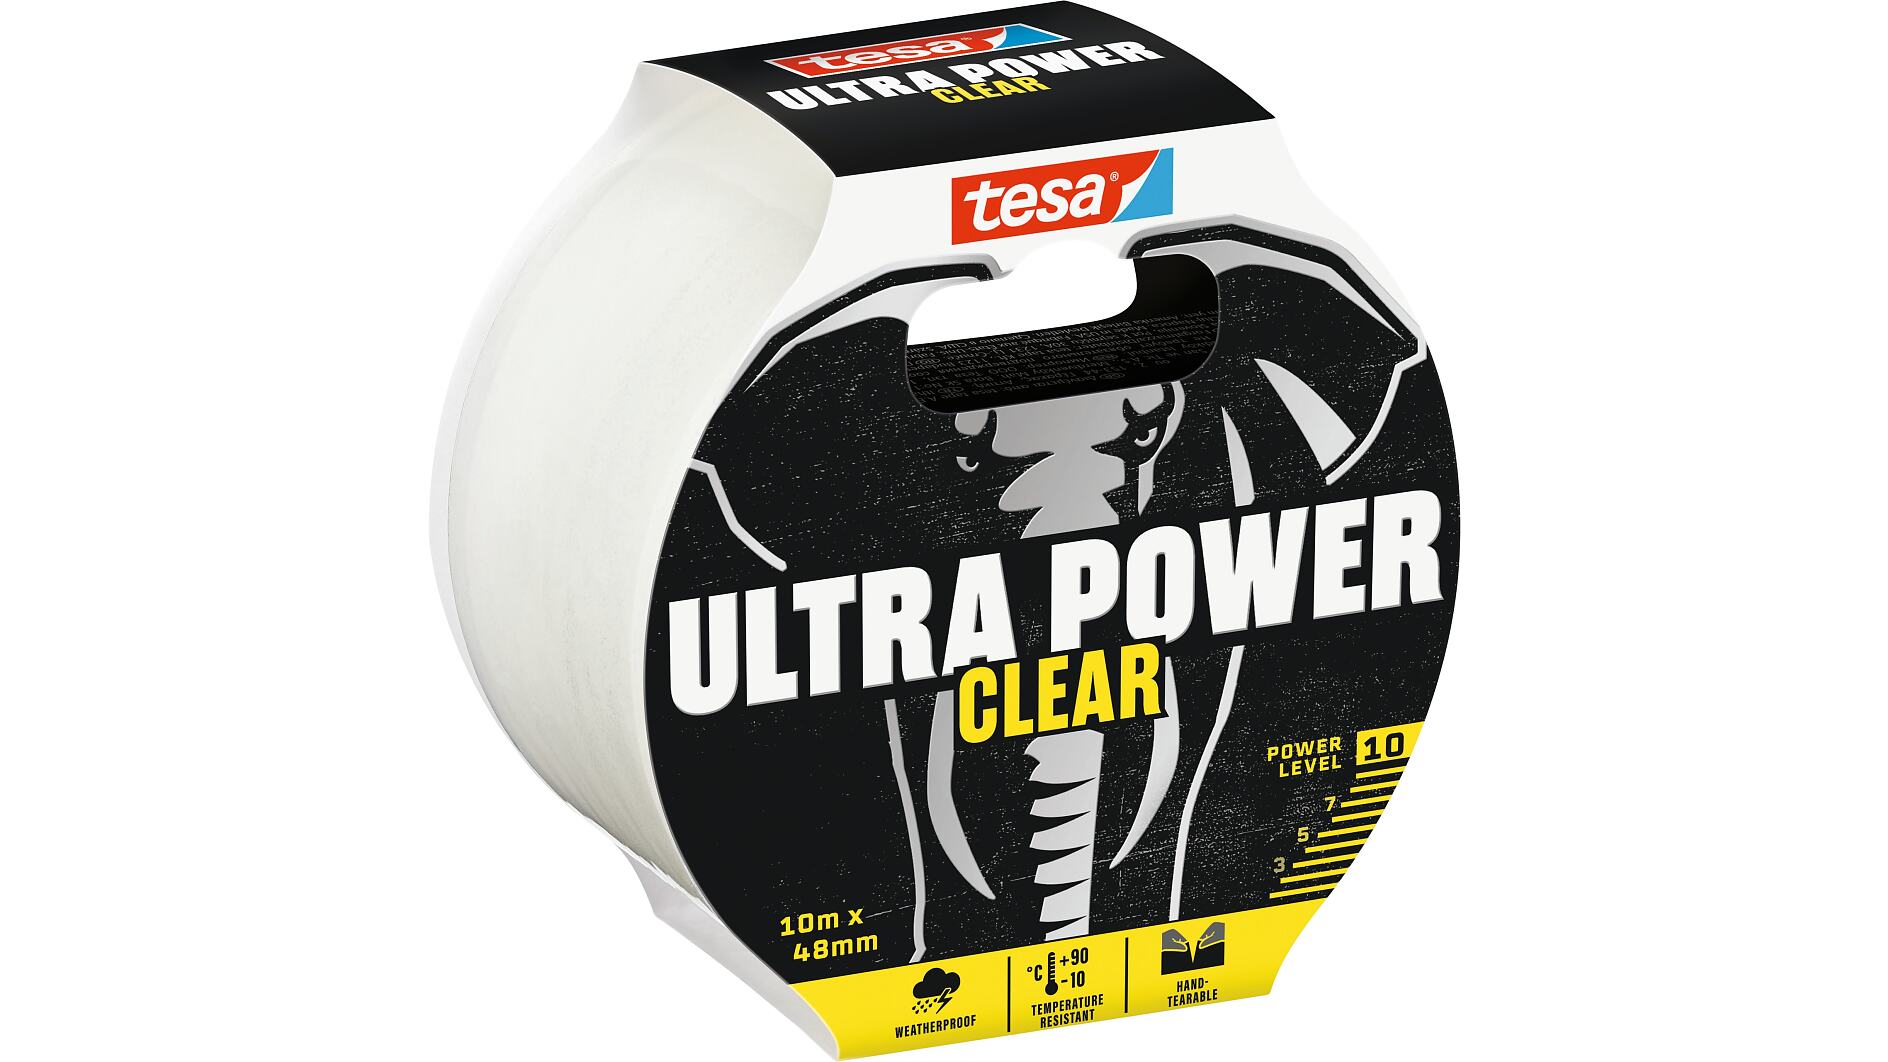 tesa® Fita Ultra Power clear repair - tesa